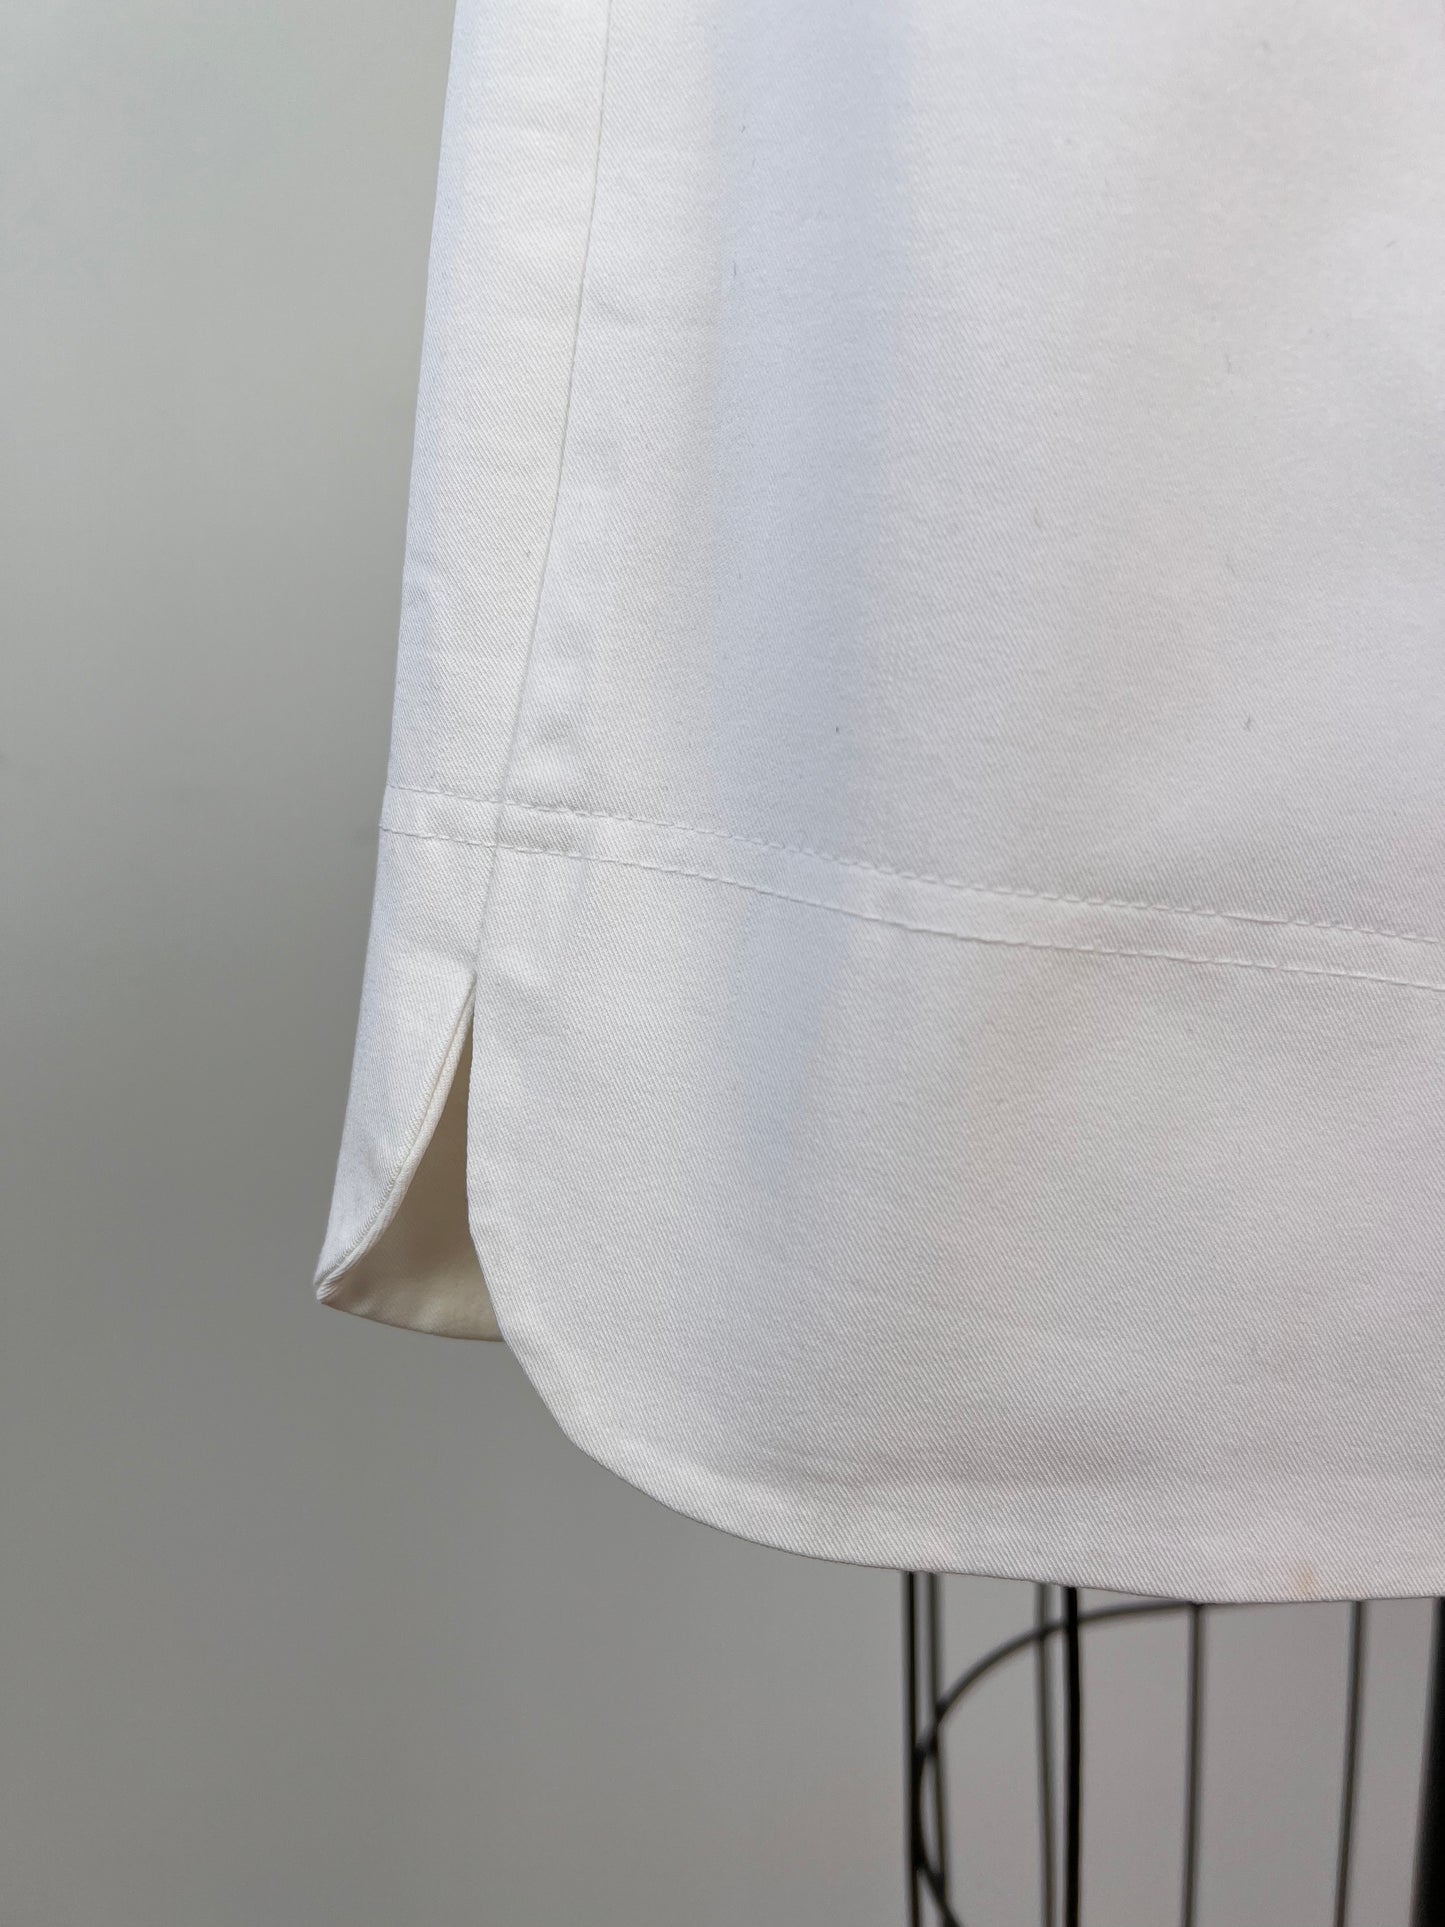 Pantalon corsaire extensible blanc (10)